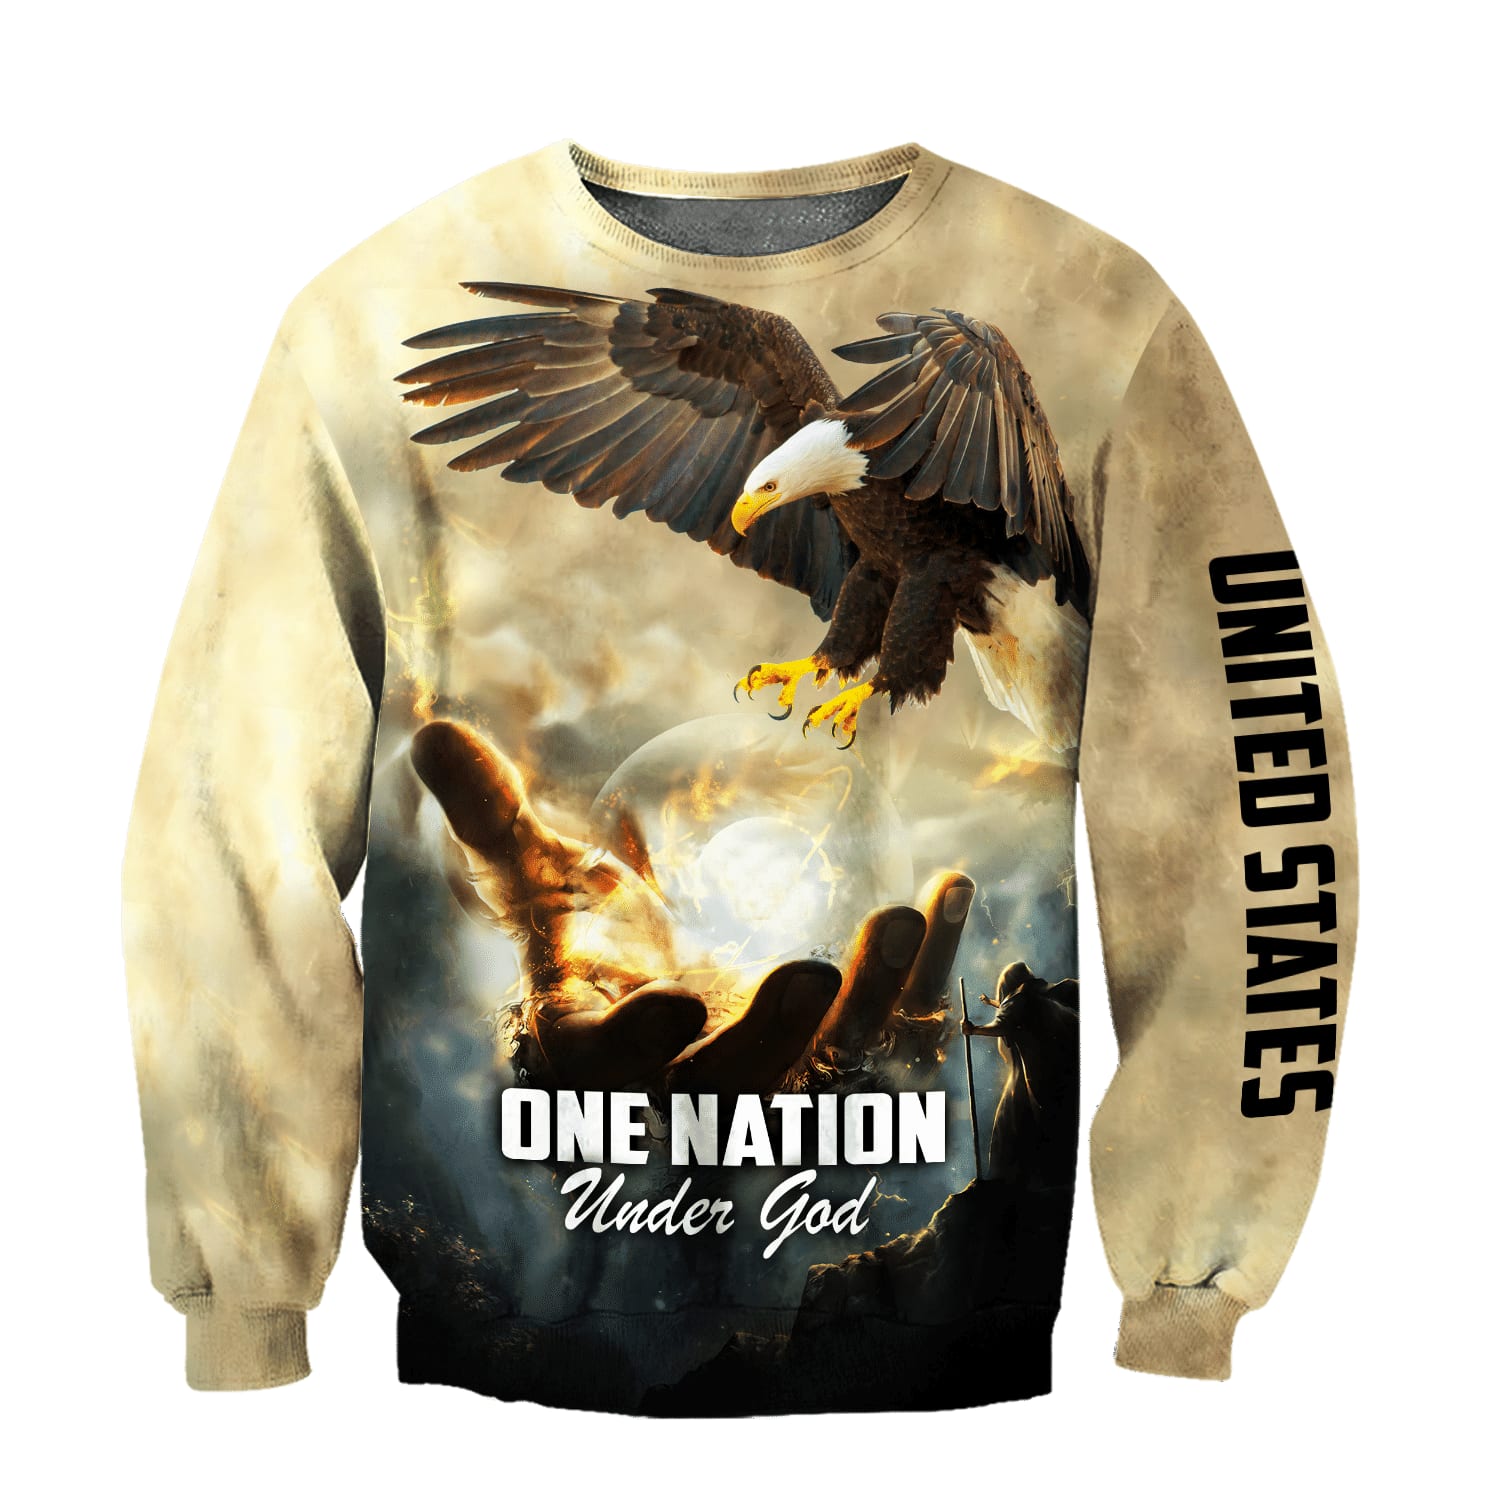 One Nation Under God - Christian Sweatshirt For Women & Men